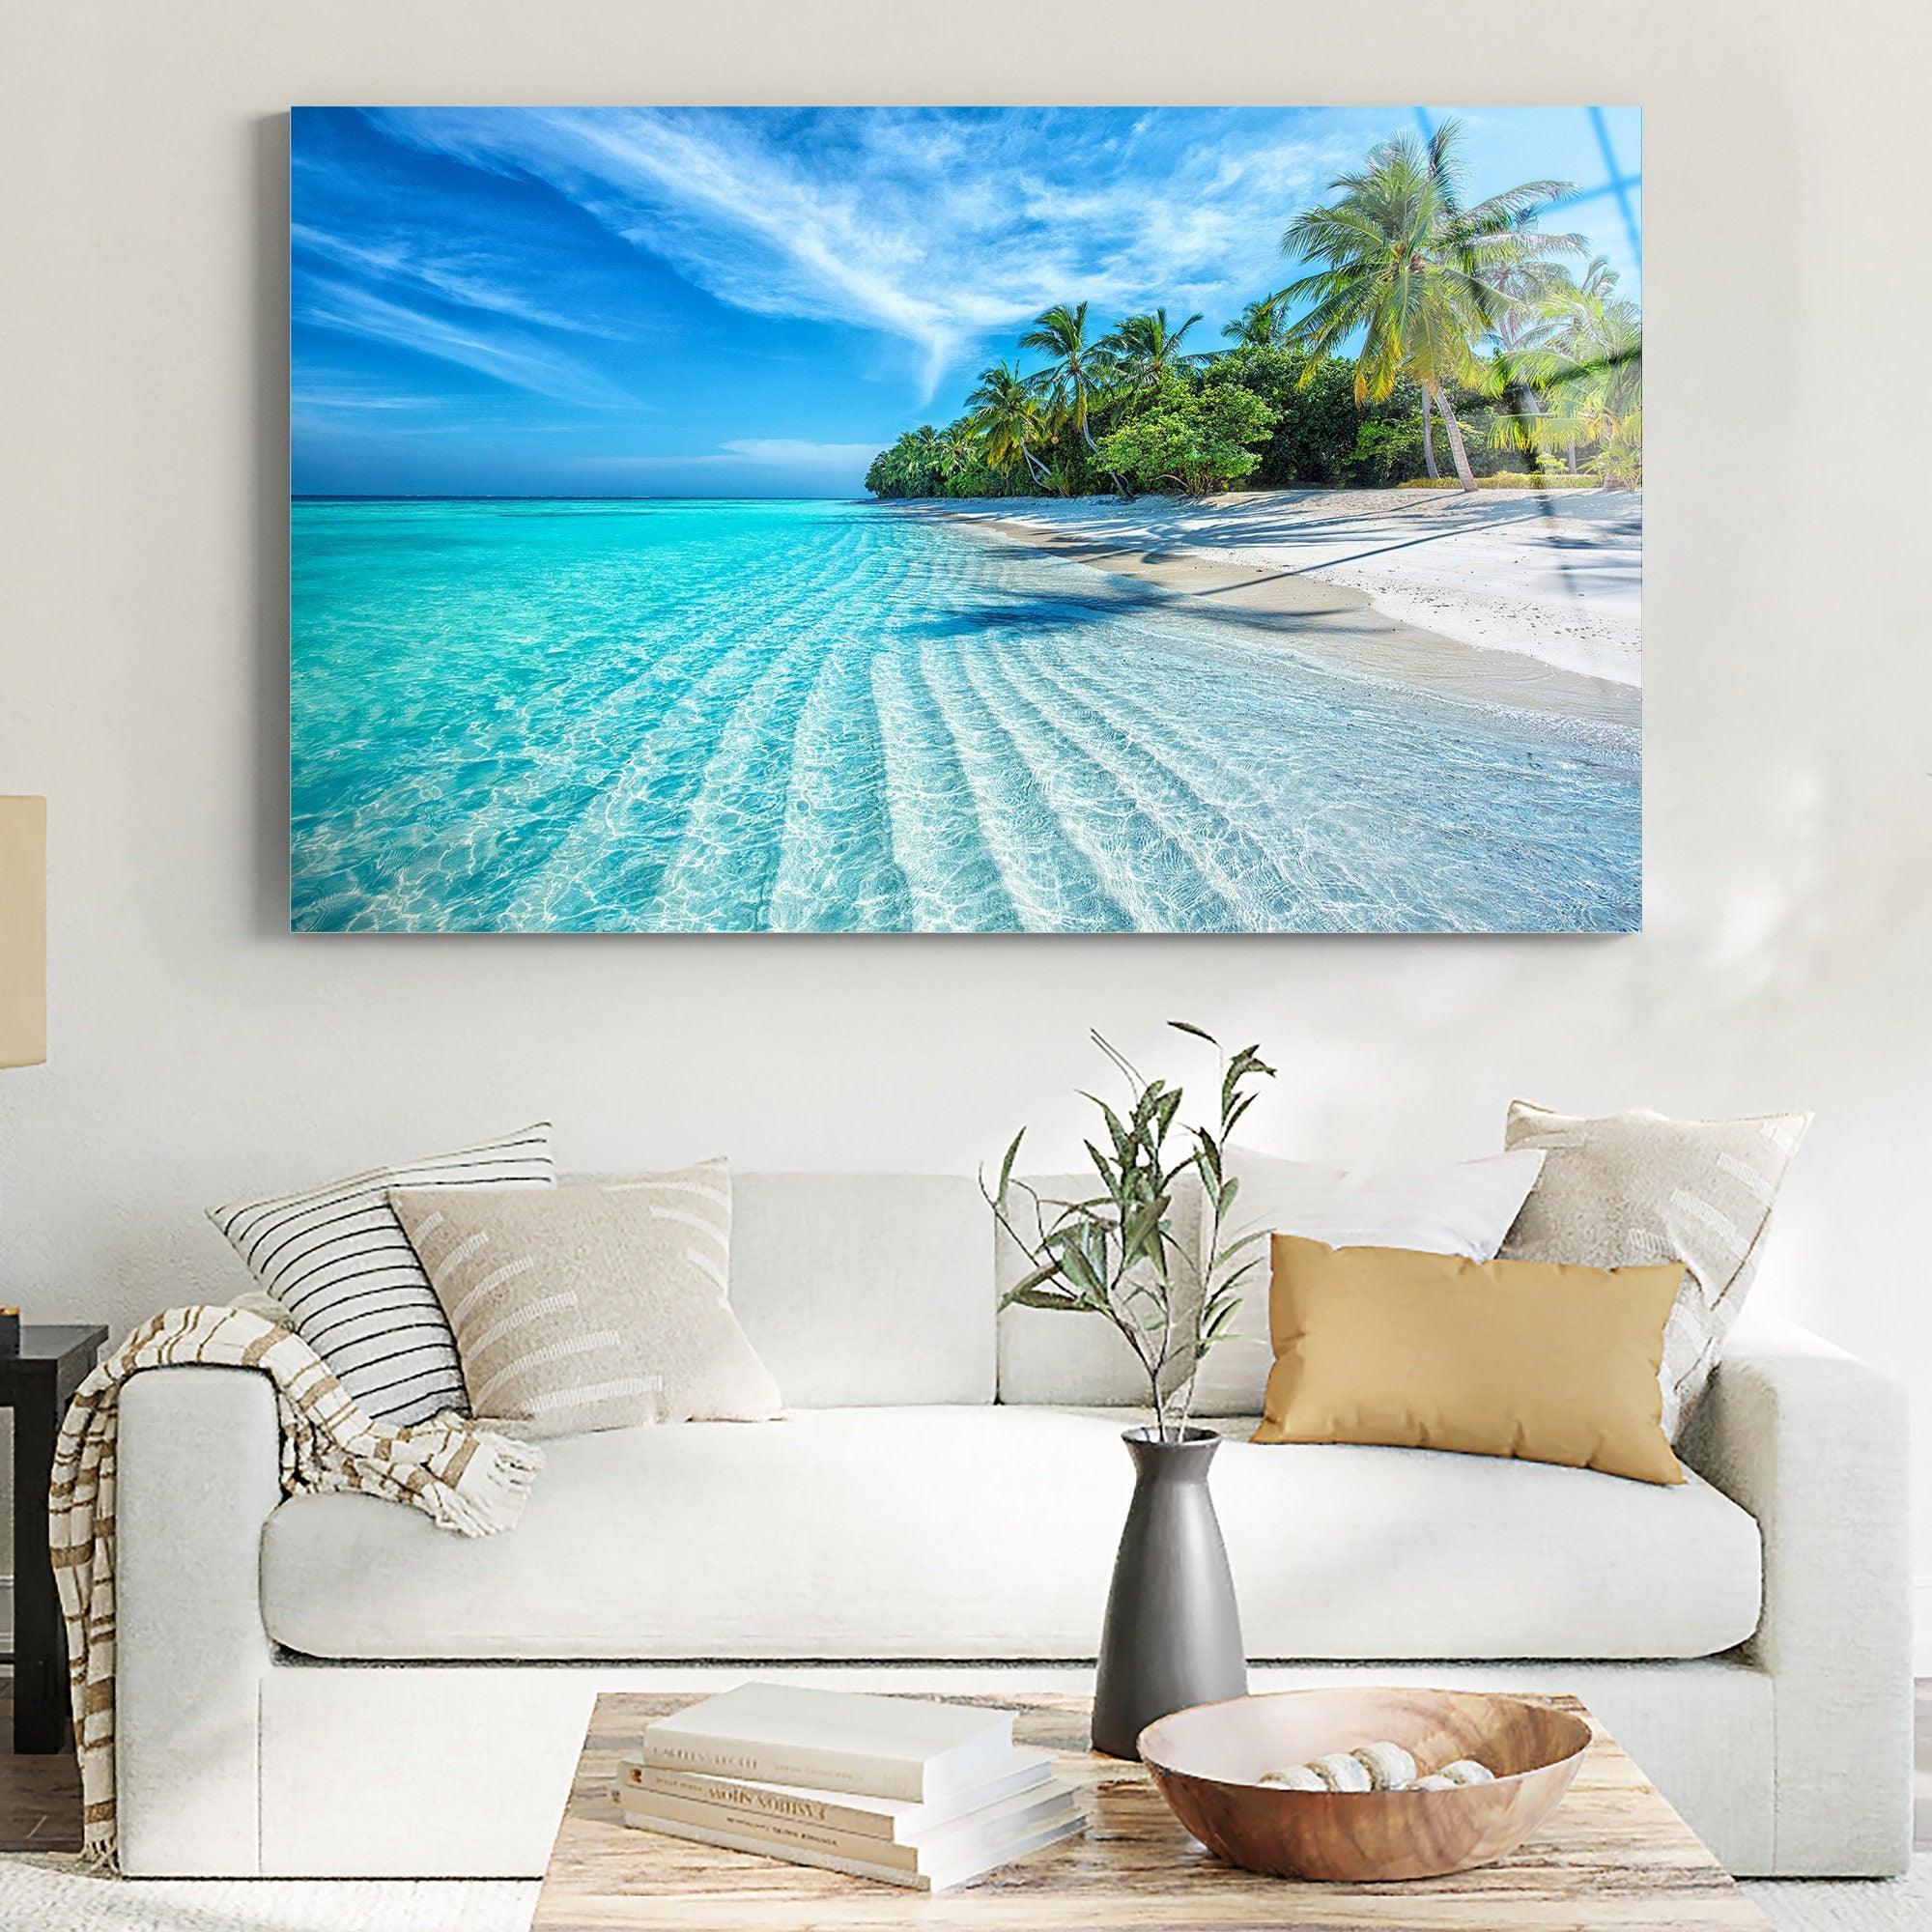 Tropical Ocean Beach Landscape Tempered Glass Wall Art Ocean wall de